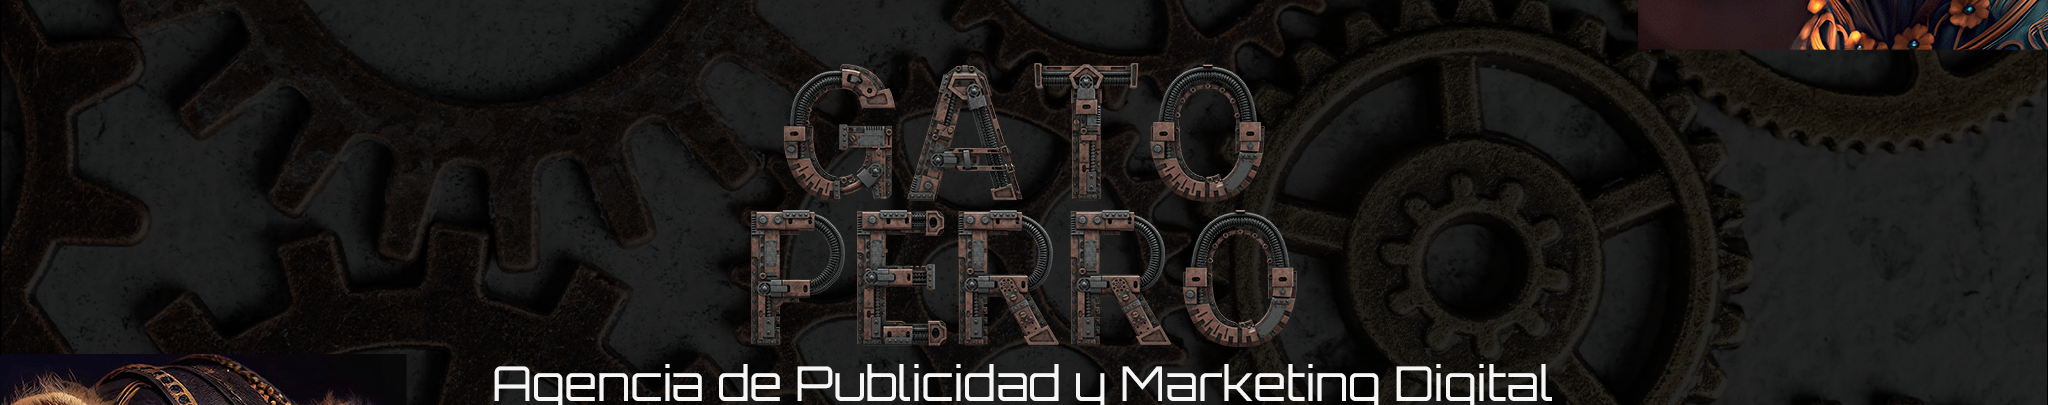 GatoPerro Agencia's profile banner